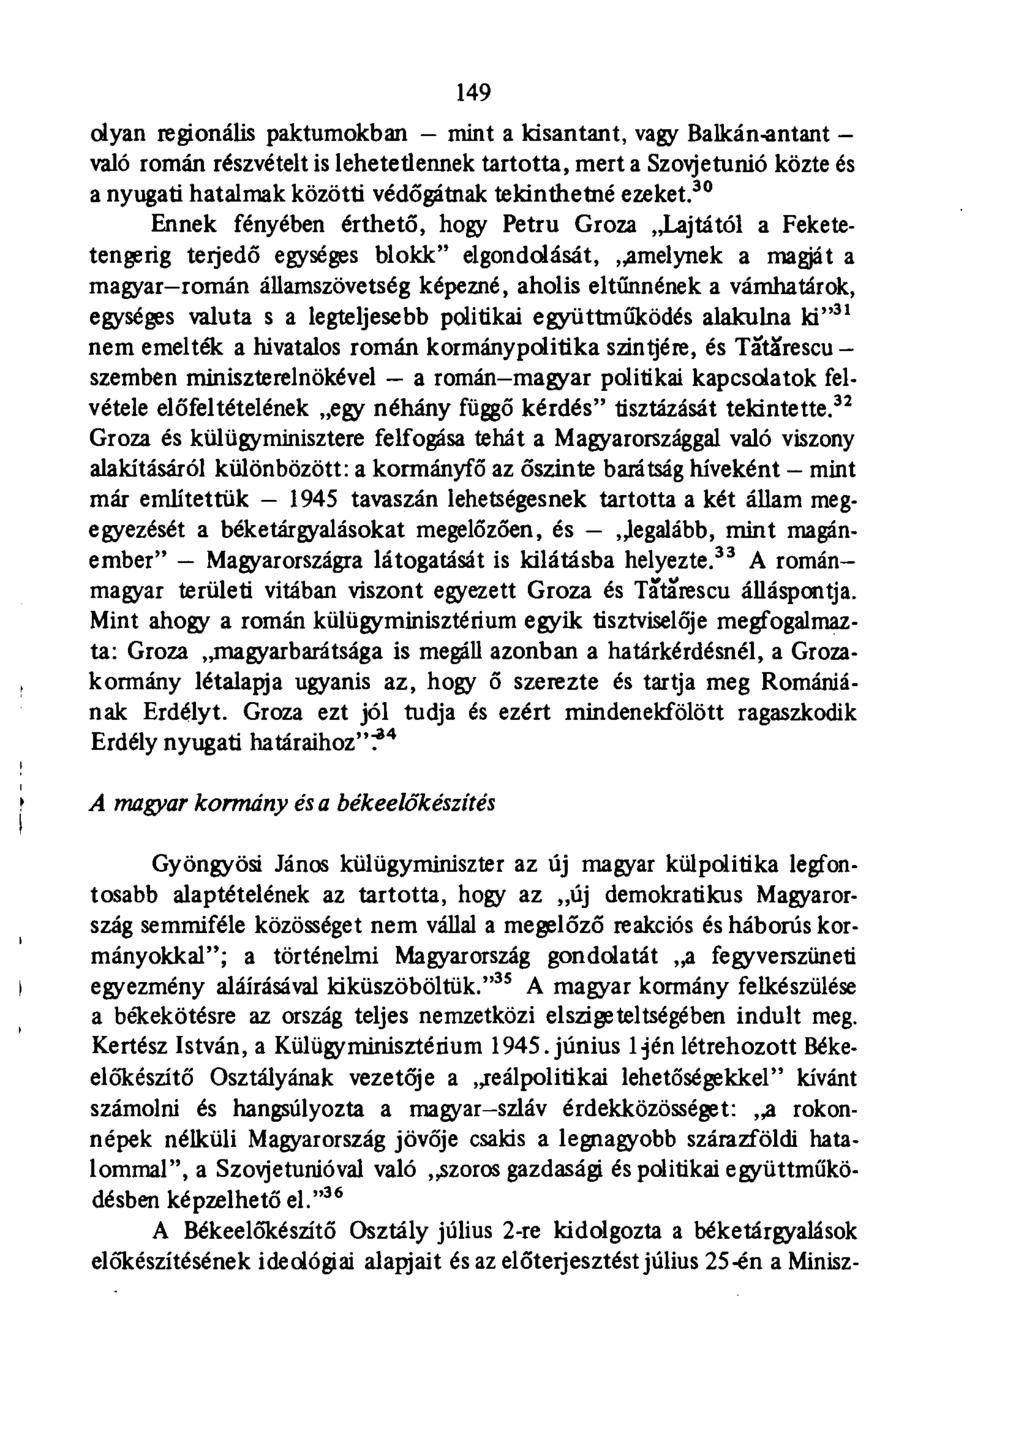 149 olyan regionális paktumokban mint a kisantant, vagy Balkán-antant - való román részvételt is lehetetlennek tartotta, mert a Szovjetunió közte és a nyugati hatalmak közötti védőgátnak tekinthetné